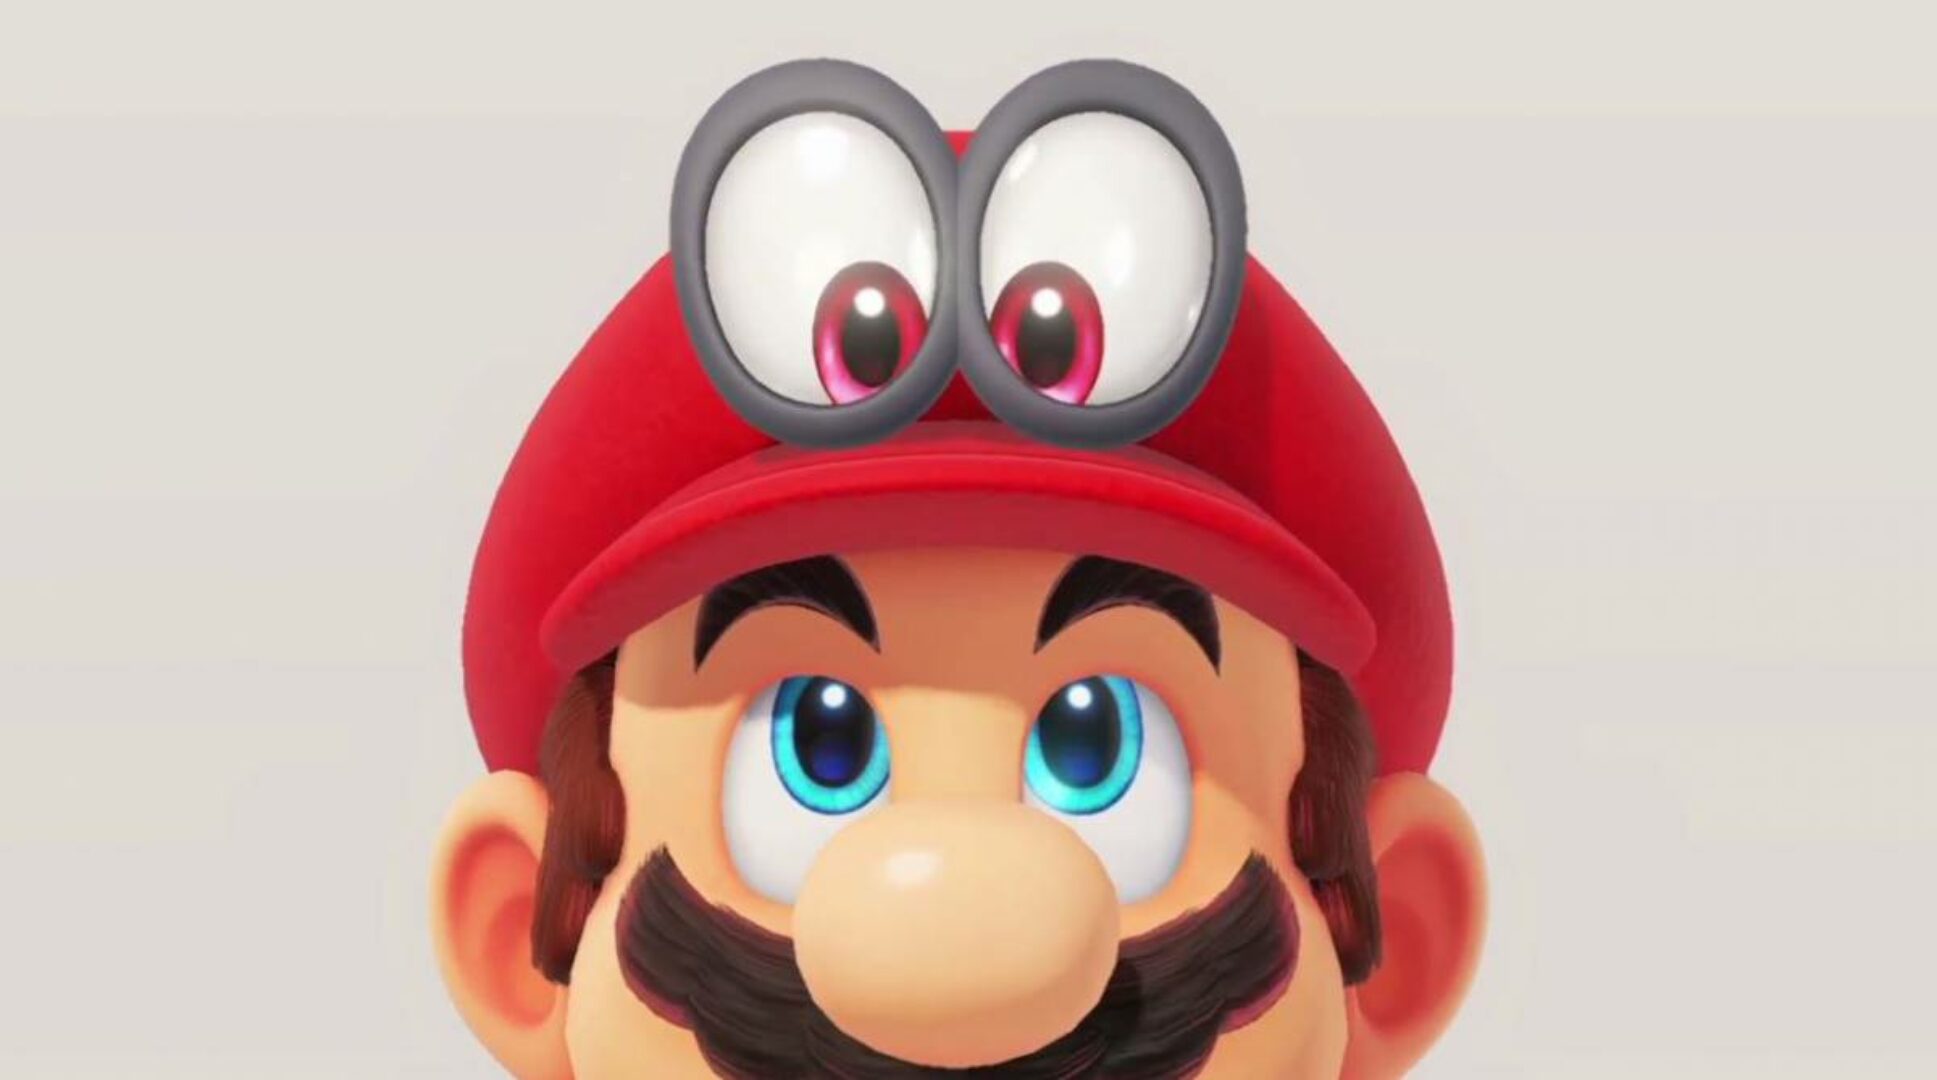 super-mario-odyssey-hat Nintendo